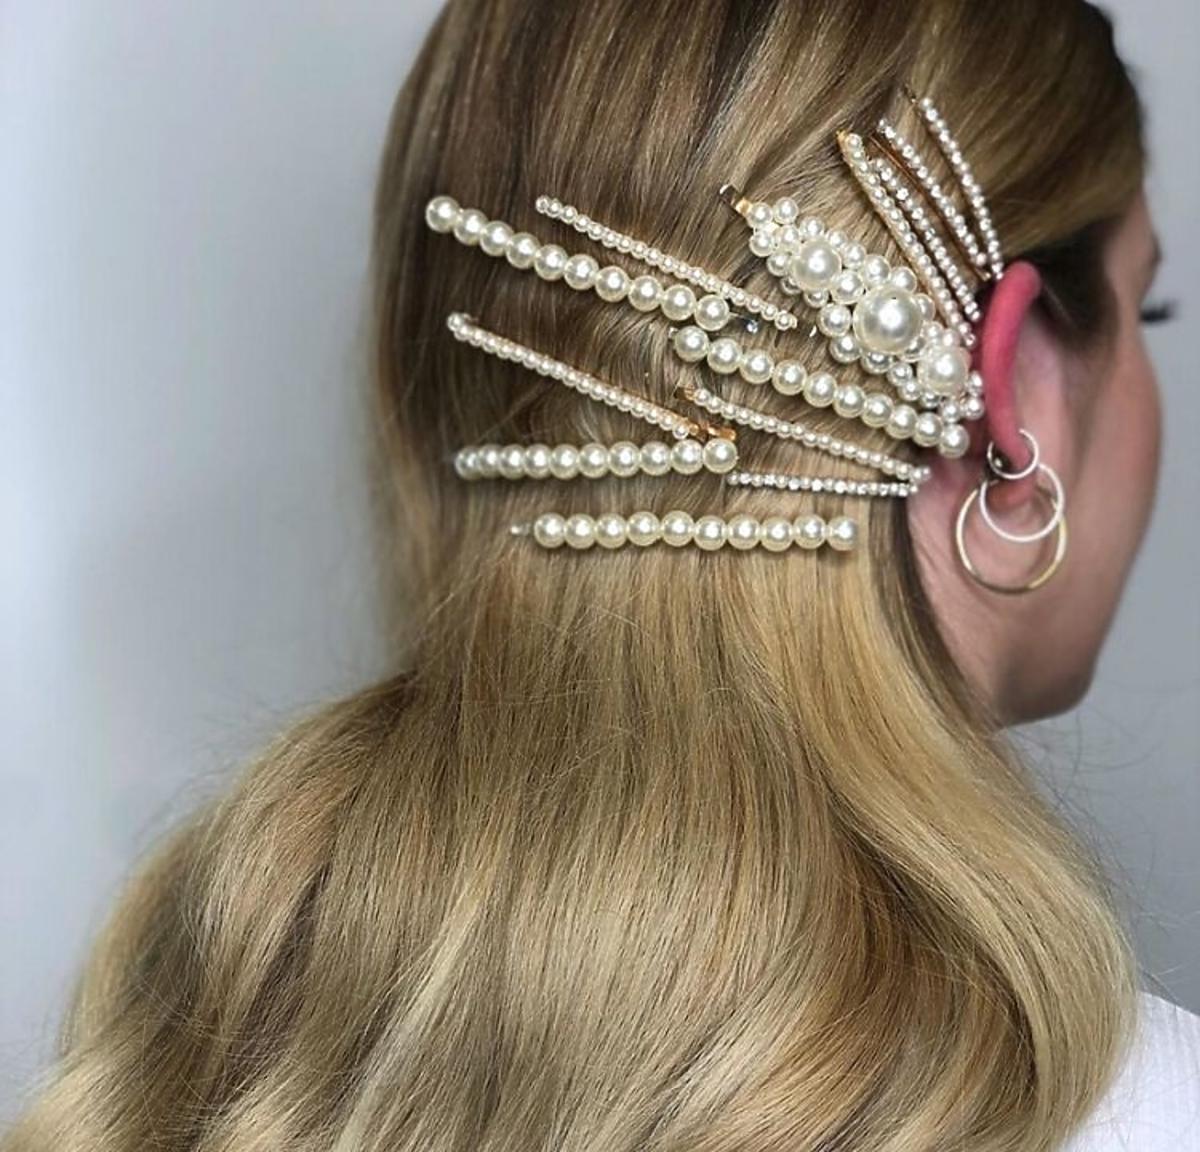 Spinki z perłami: najpiękniejszy dodatek do fryzur na święta /Instagram: niniej